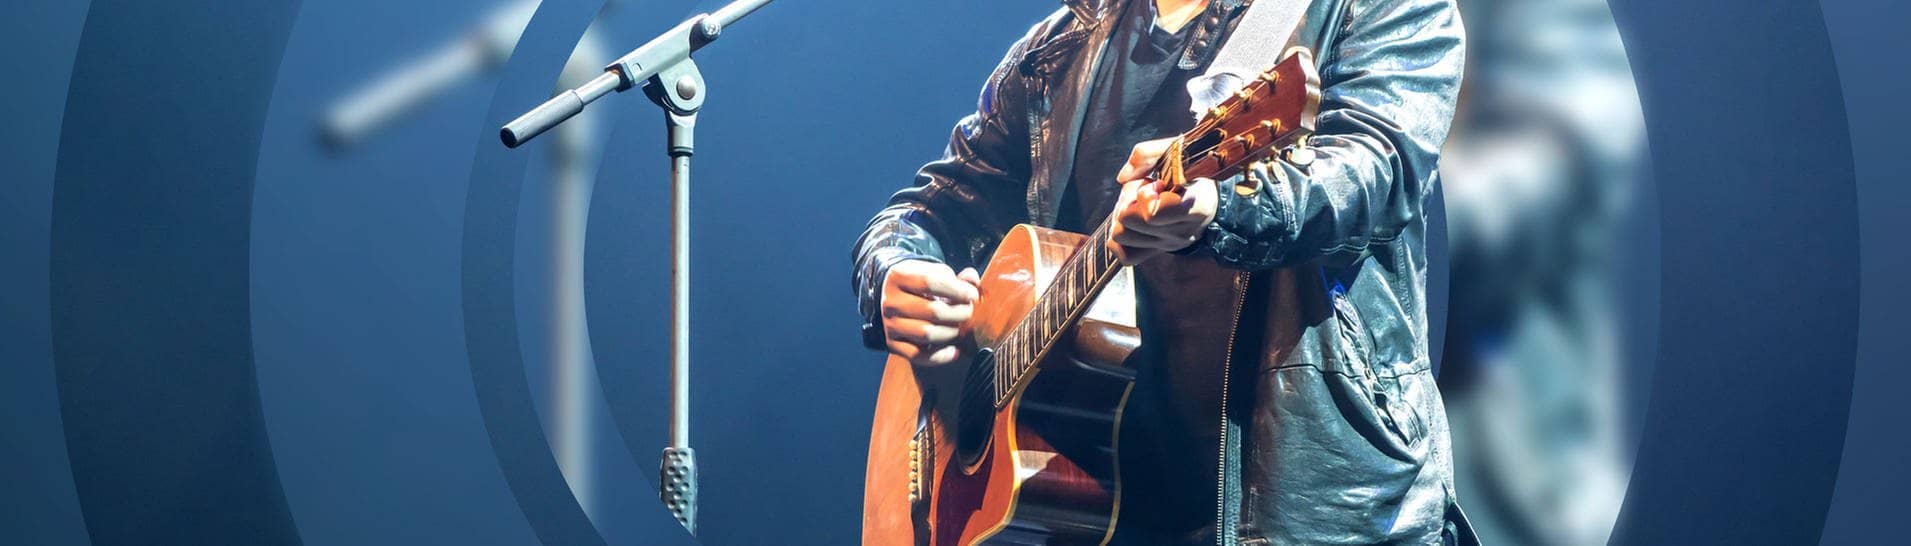 Ein Musiker spielt bei einem Auftritt auf einer Akustik-Gitarre (Foto: Adobe Stock, v74)